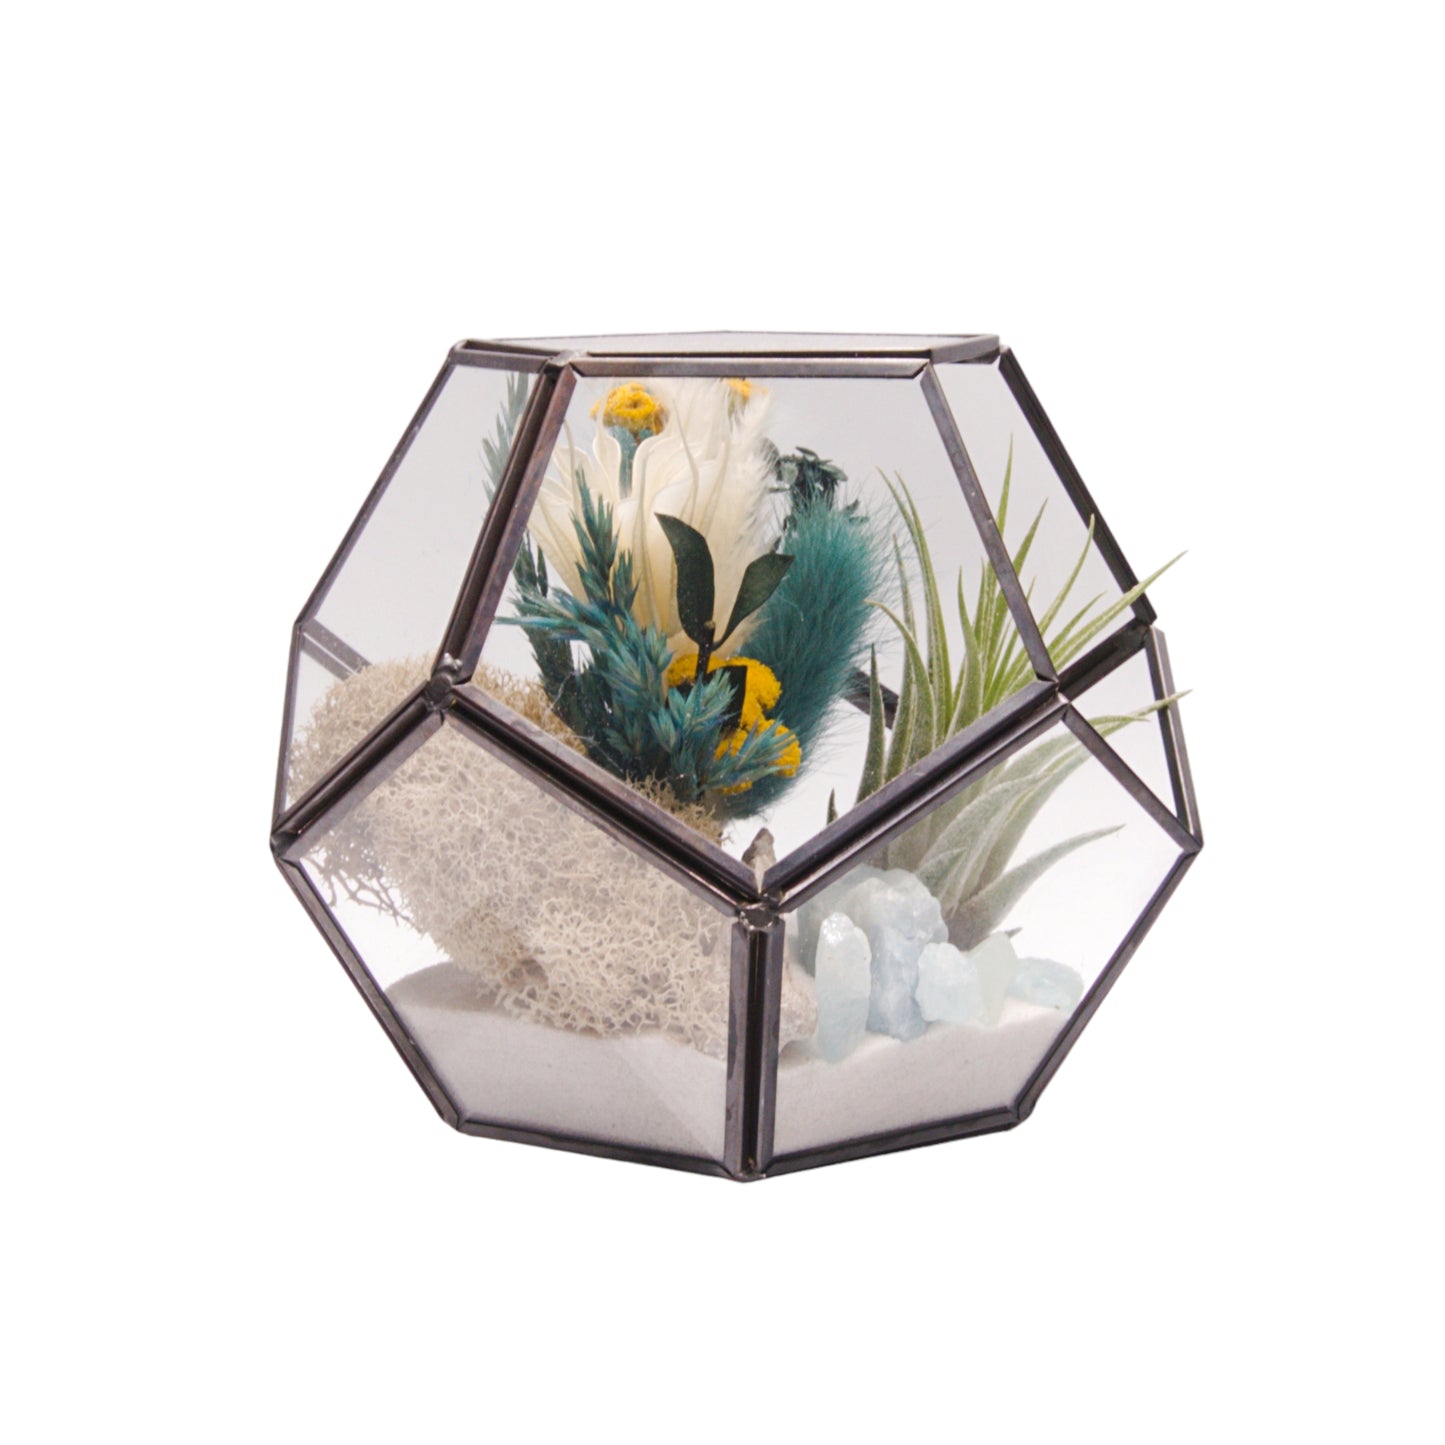 Victorian Bowl Airplant Terrarium - Aquamarine Crystals